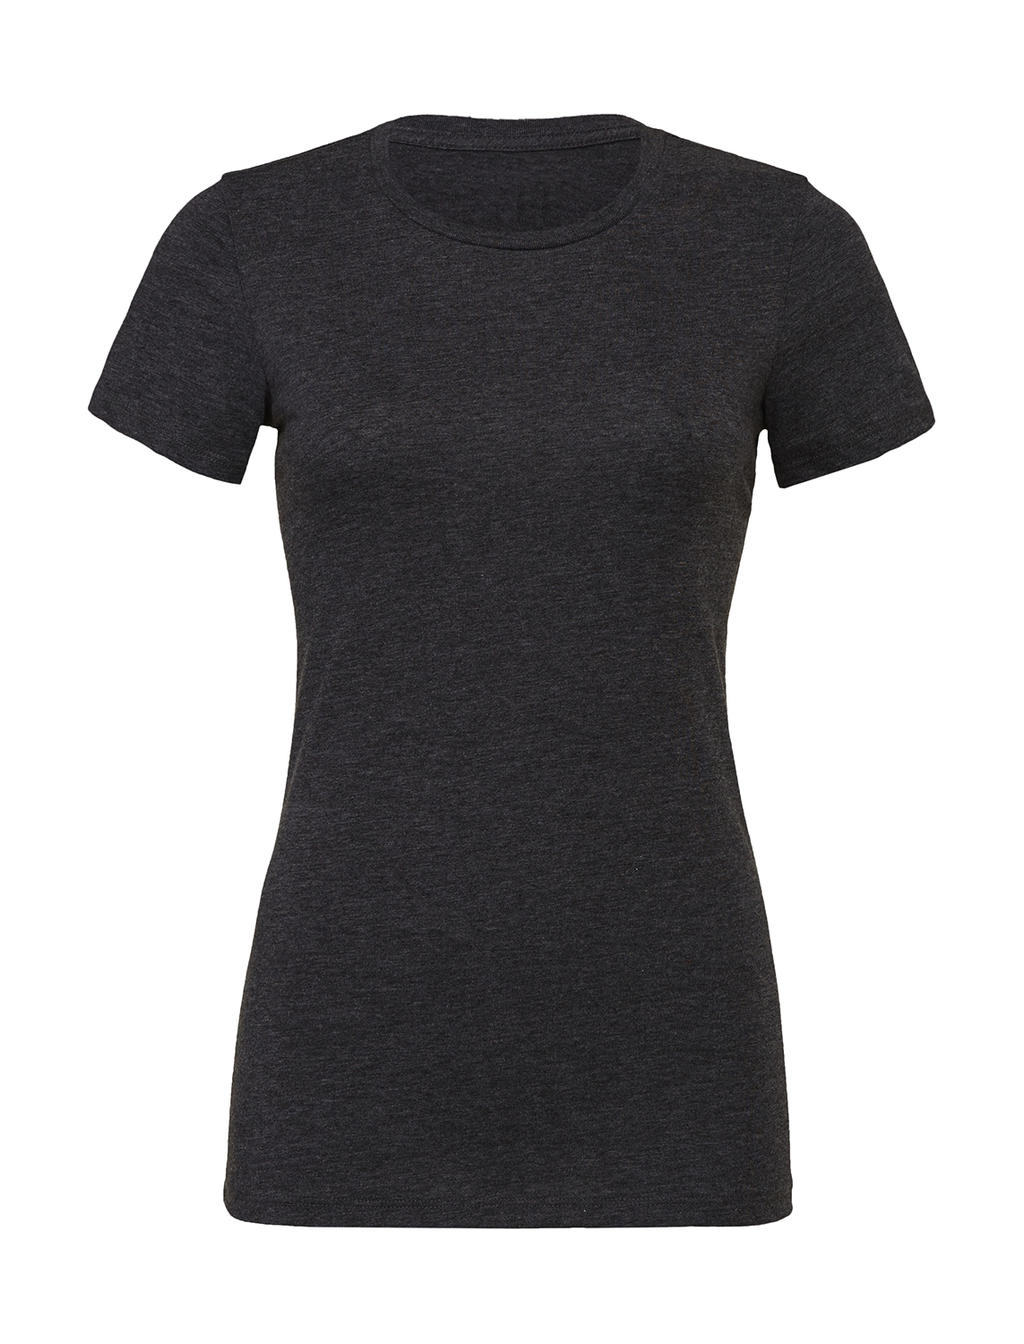 The Favorite T-Shirt zum Besticken und Bedrucken in der Farbe Dark Grey Heather mit Ihren Logo, Schriftzug oder Motiv.